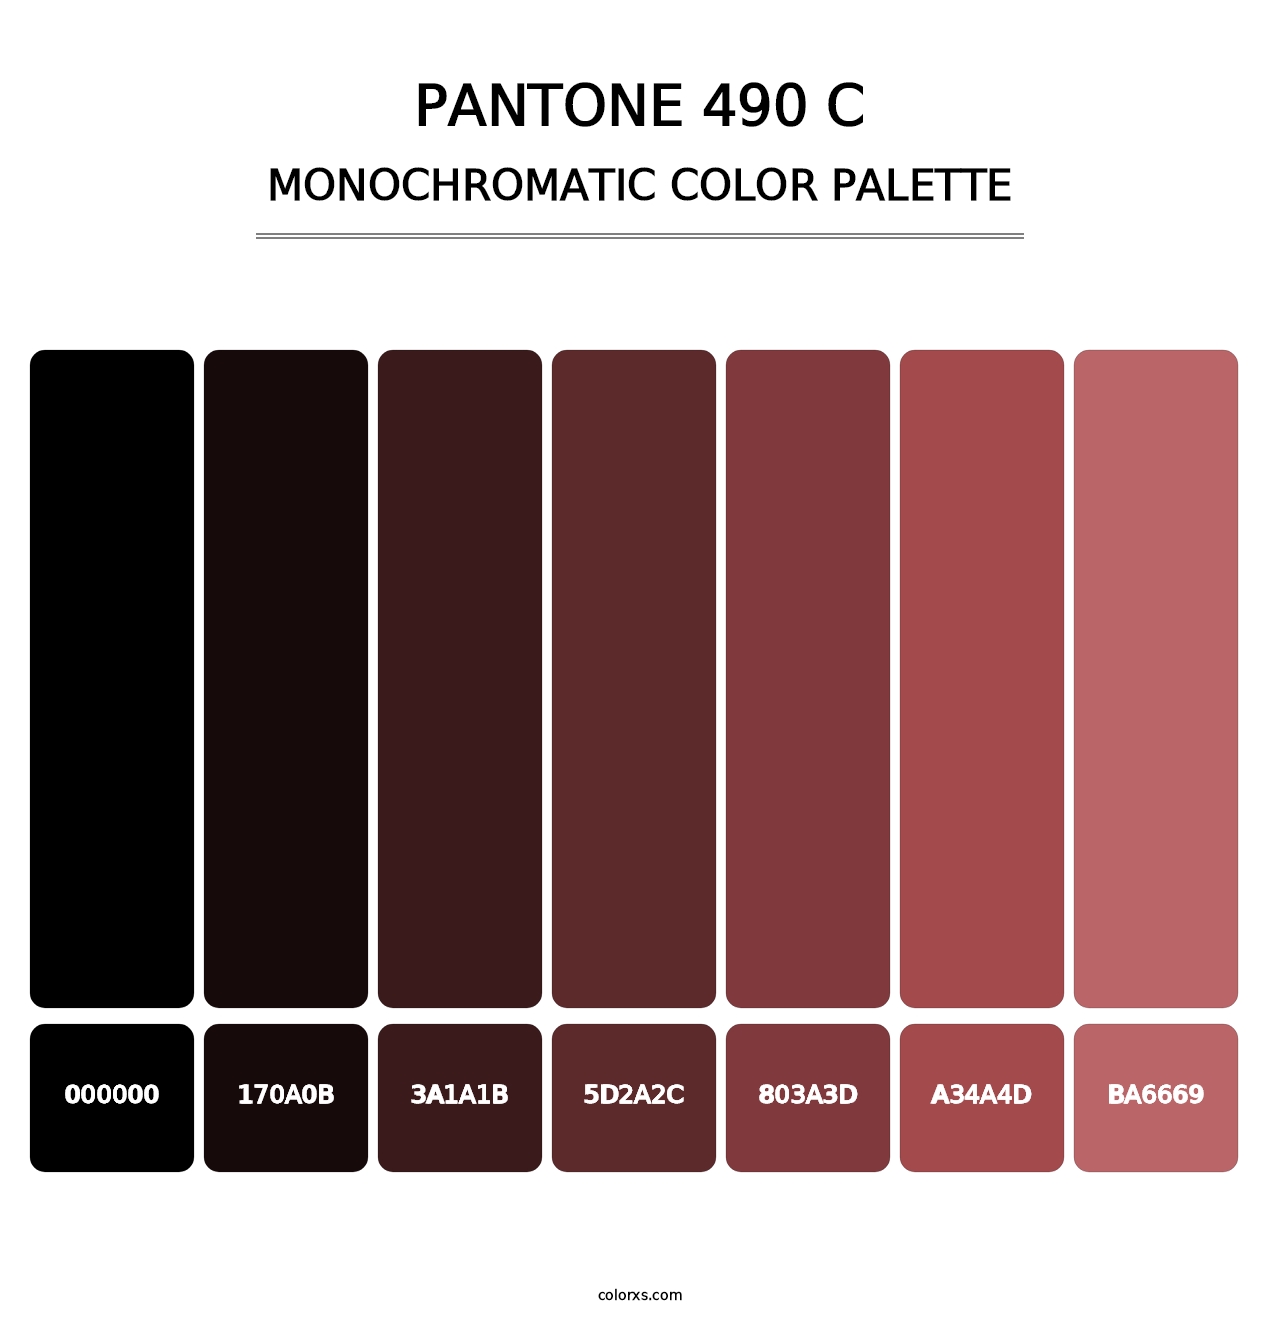 PANTONE 490 C - Monochromatic Color Palette